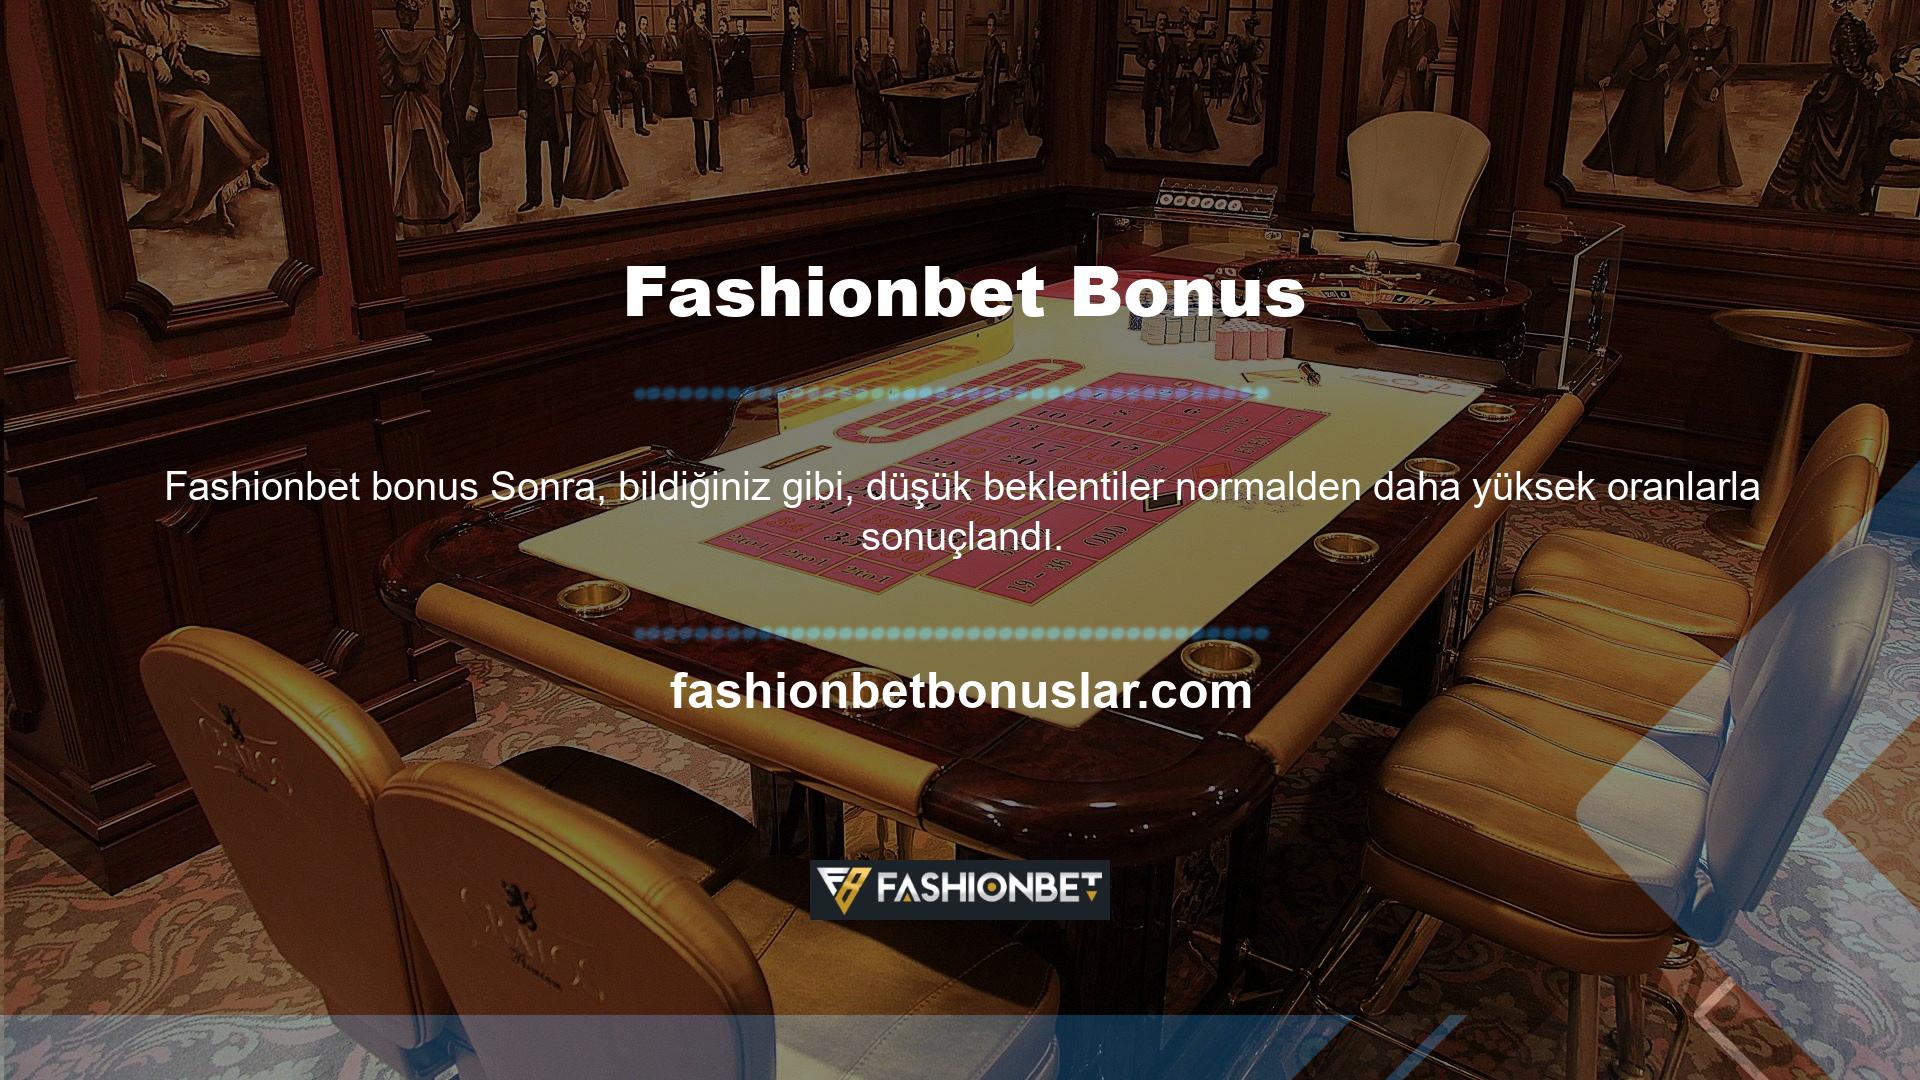 Fashionbet Bonus